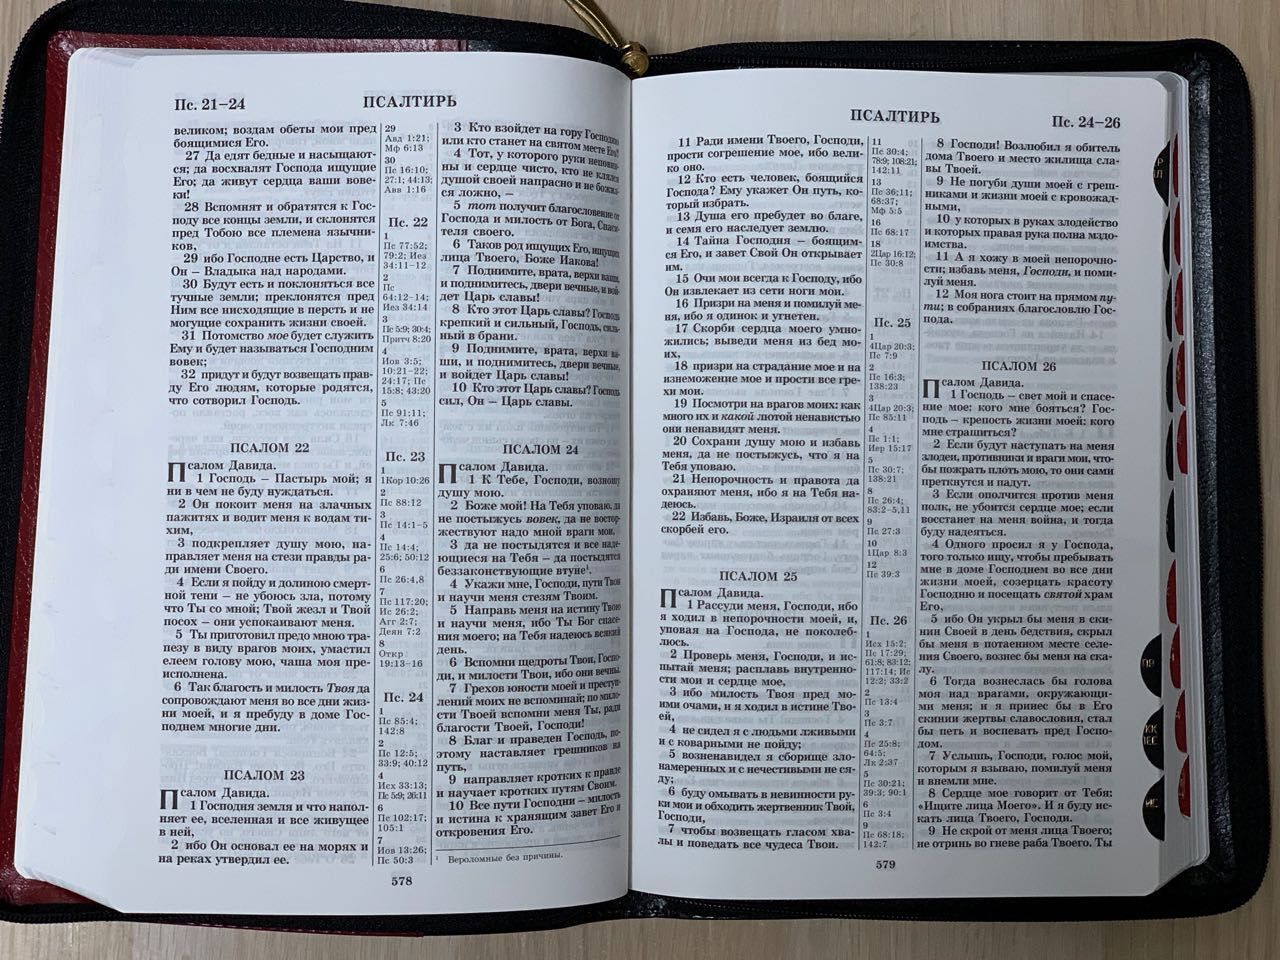 БИБЛИЯ 077DTzti формат, переплет из искусственной кожи на молнии с индексами, надпись золотом "Библия", цвет черный/ светлокоричневый металлик, большой формат, 180*260 мм, цветные карты, крупный шрифт